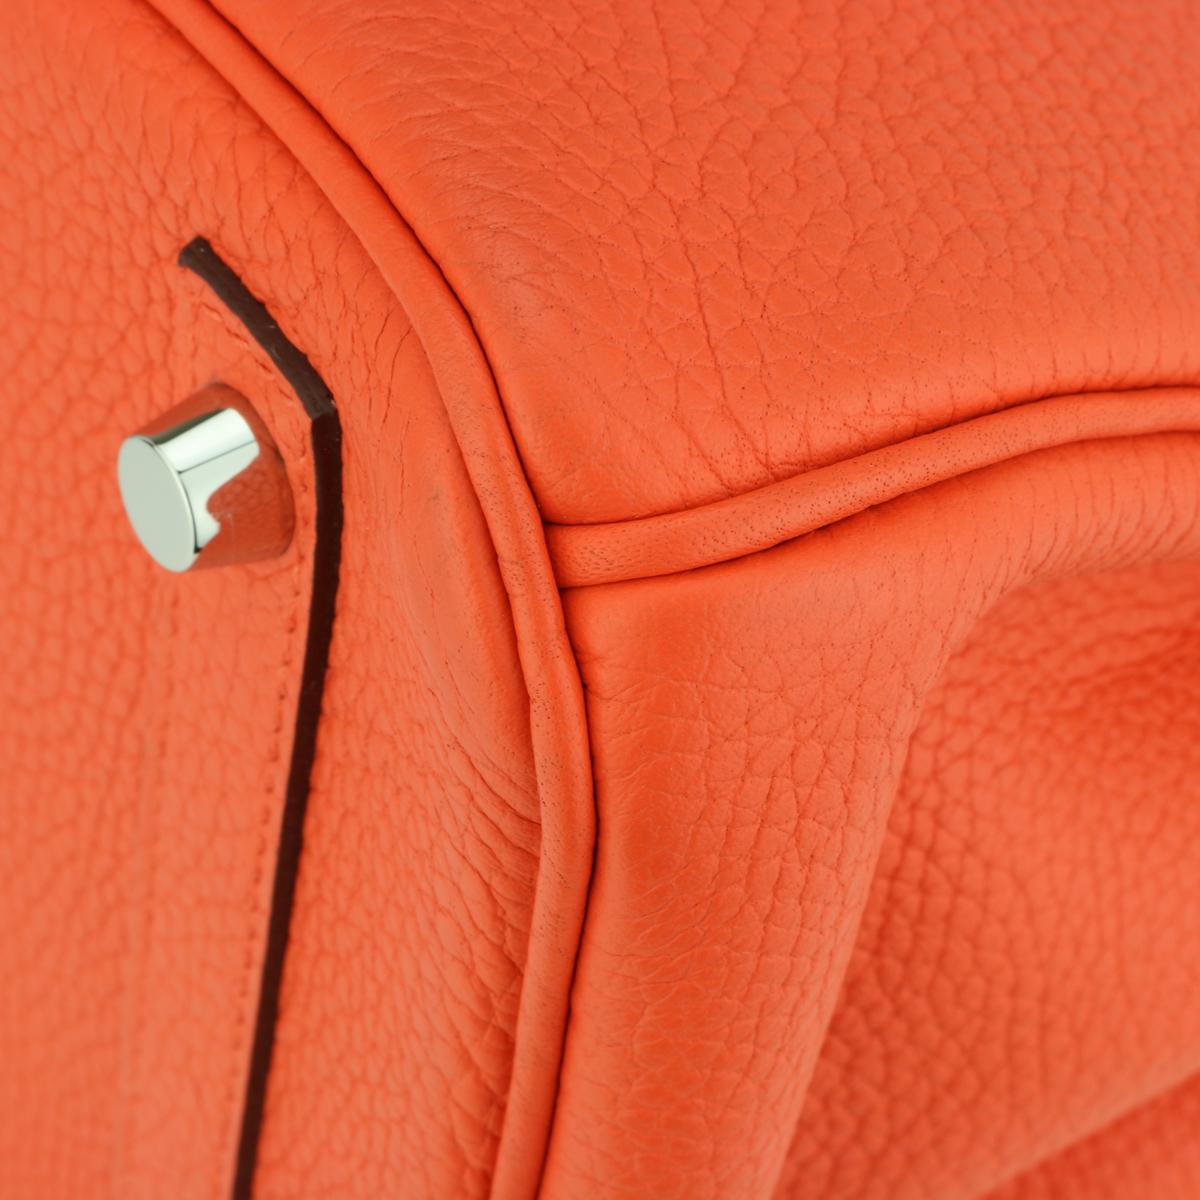 Hermès Birkin Bag 30cm Poppy Orange Togo Leather Palladium Hardware Stamp T 2015 For Sale 6